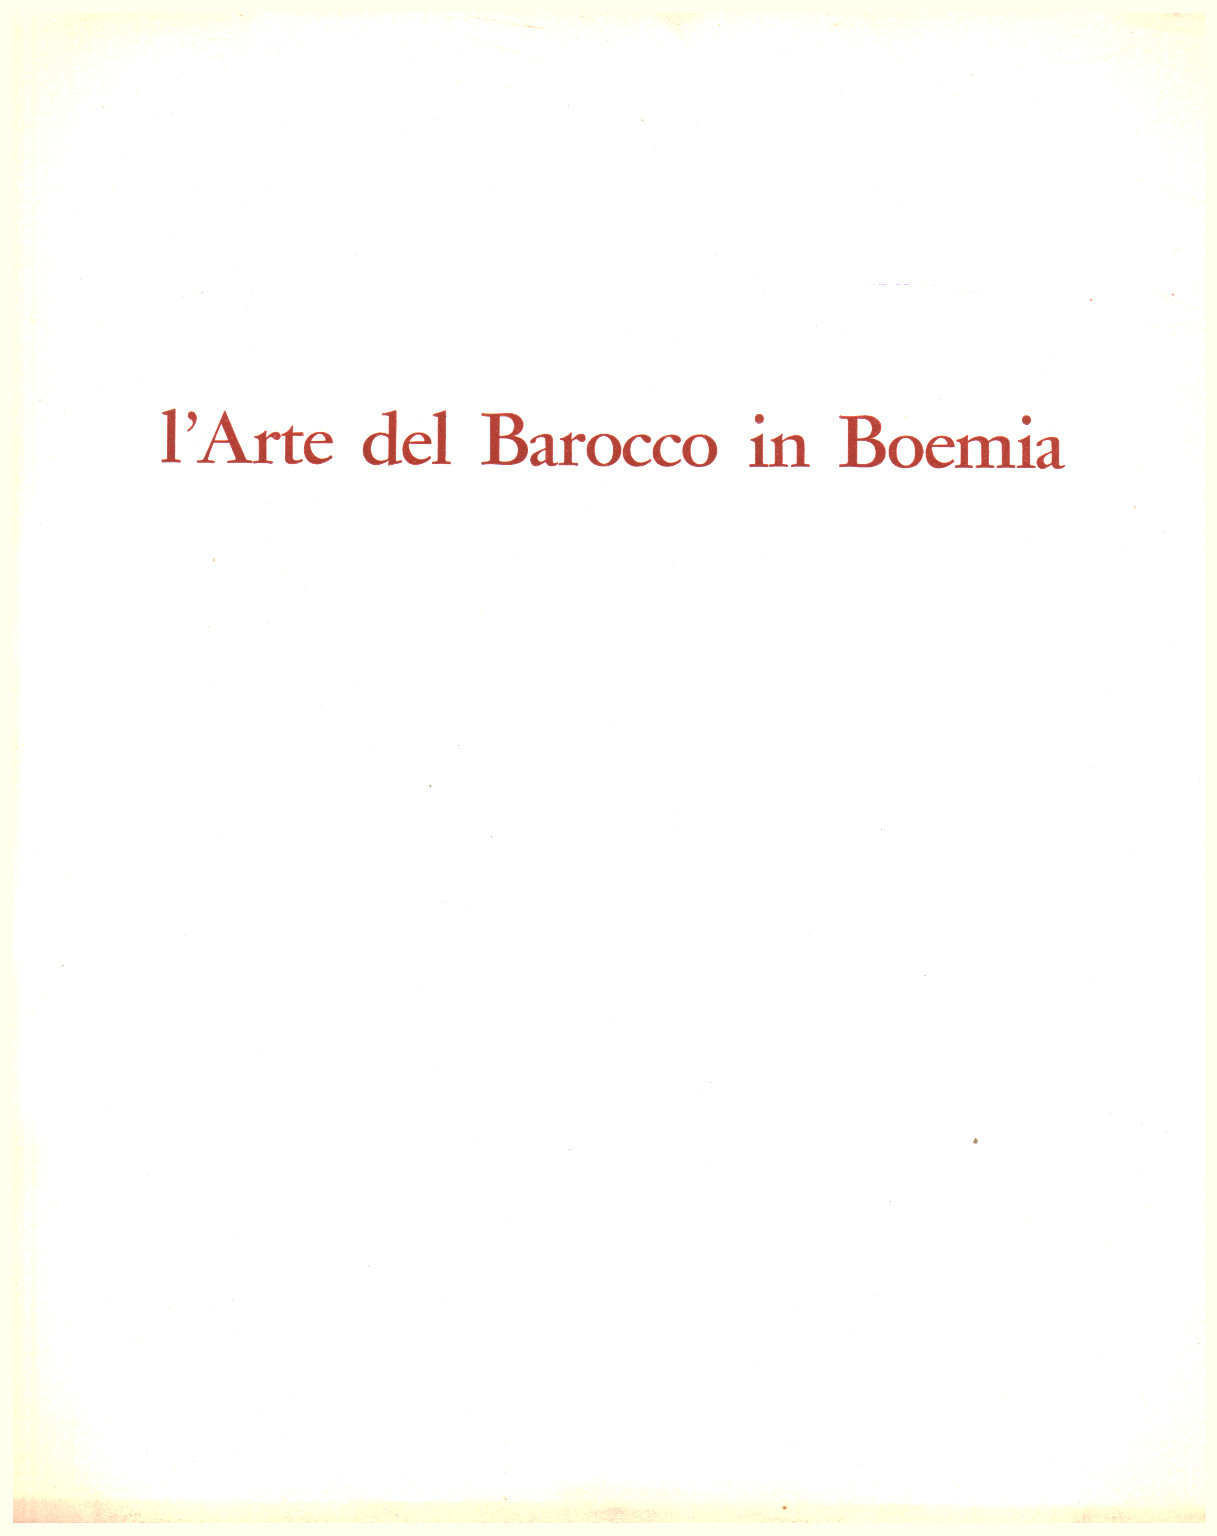 El arte del barroco en Bohemia, s.una.